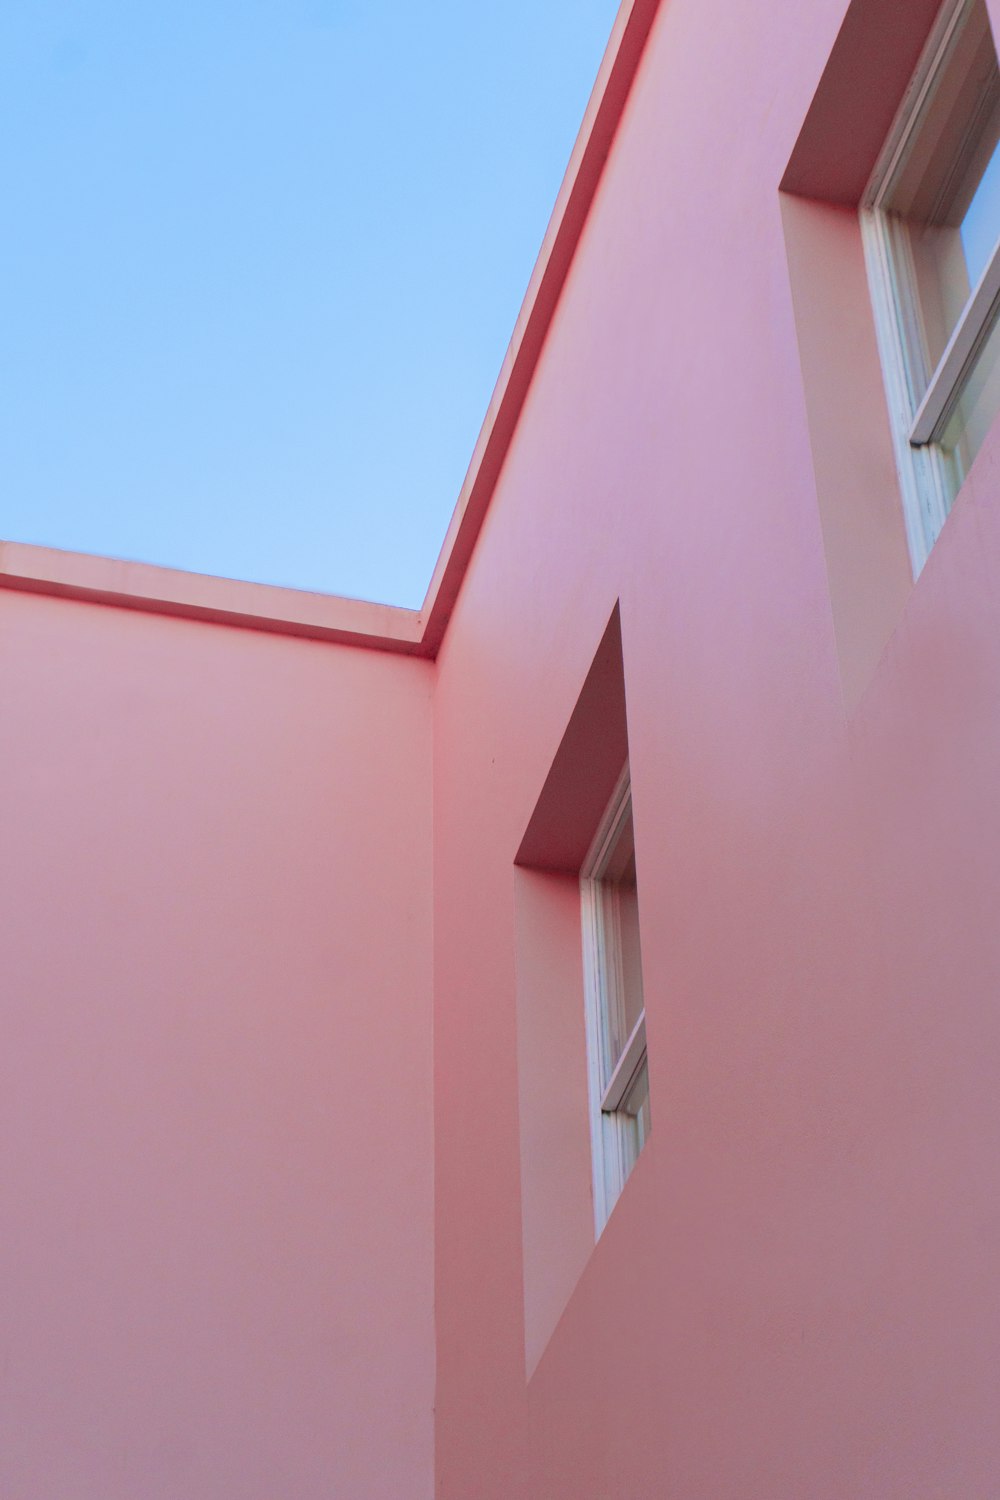 edifício de concreto rosa sob o céu azul durante o dia